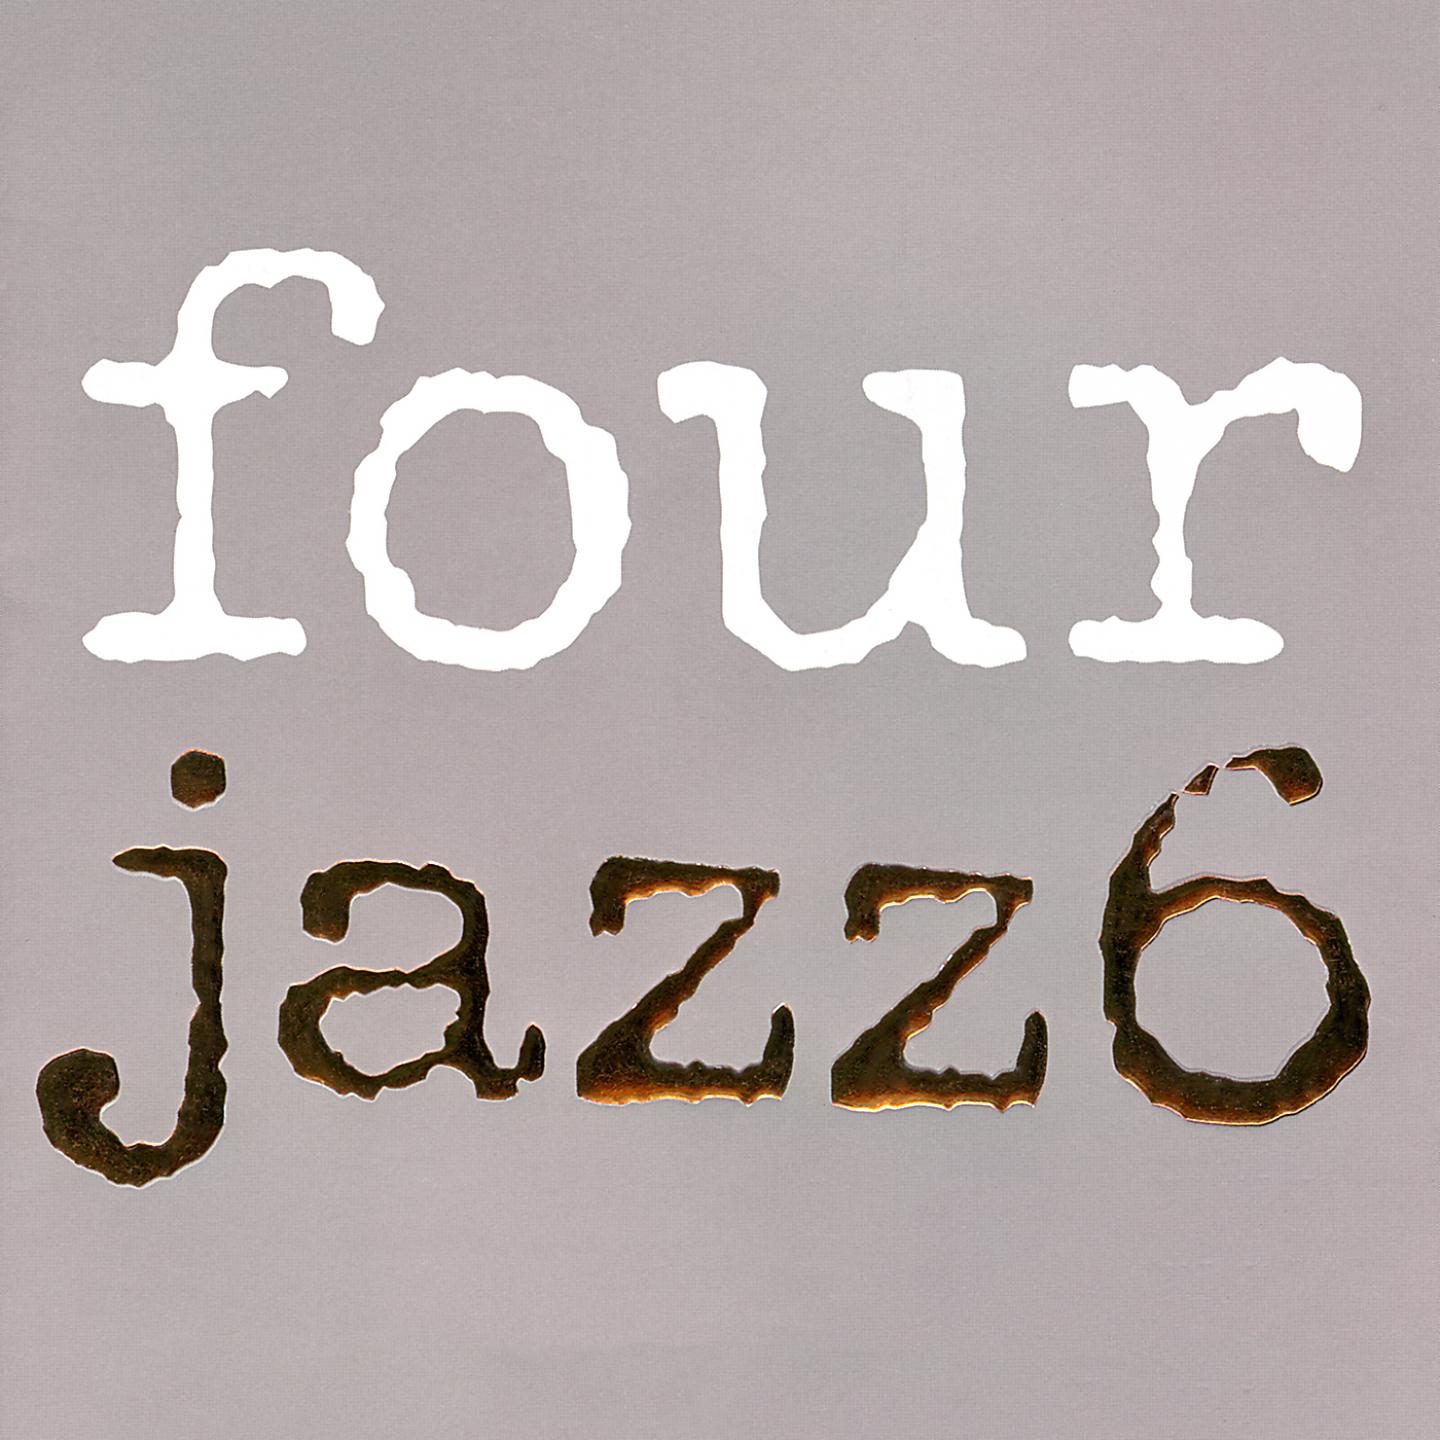 Four Jazz. Just friends Jazz. Take 6 джаз.